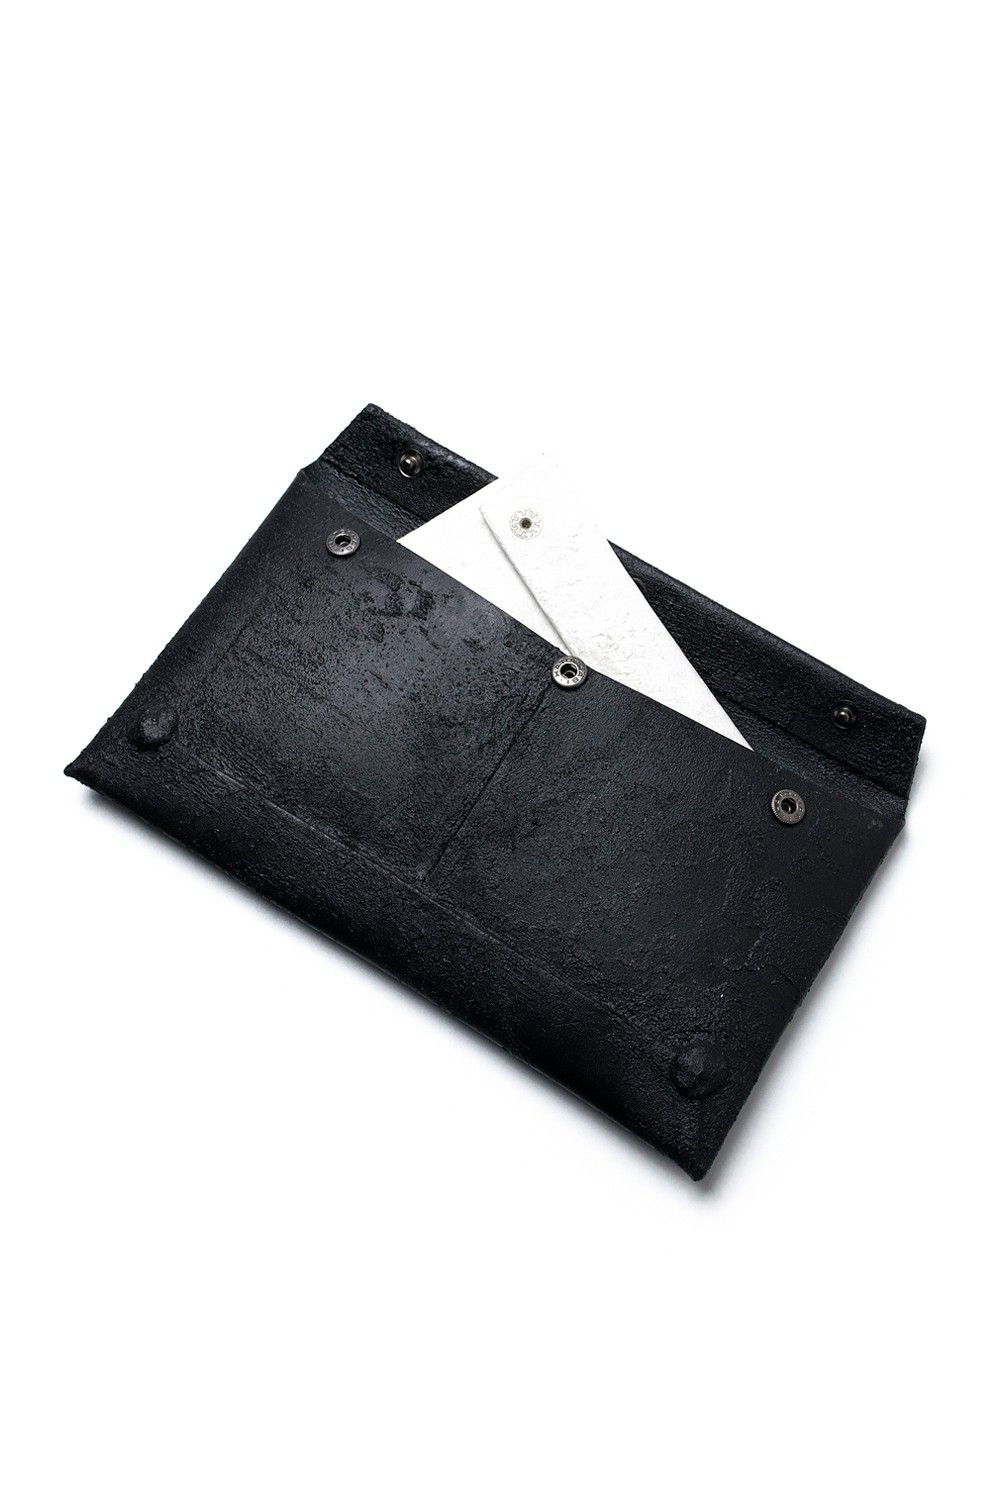 KAGARI YUSUKE - 【ラスト1点】封筒型長財布 [黒い壁] / mw02-bk 